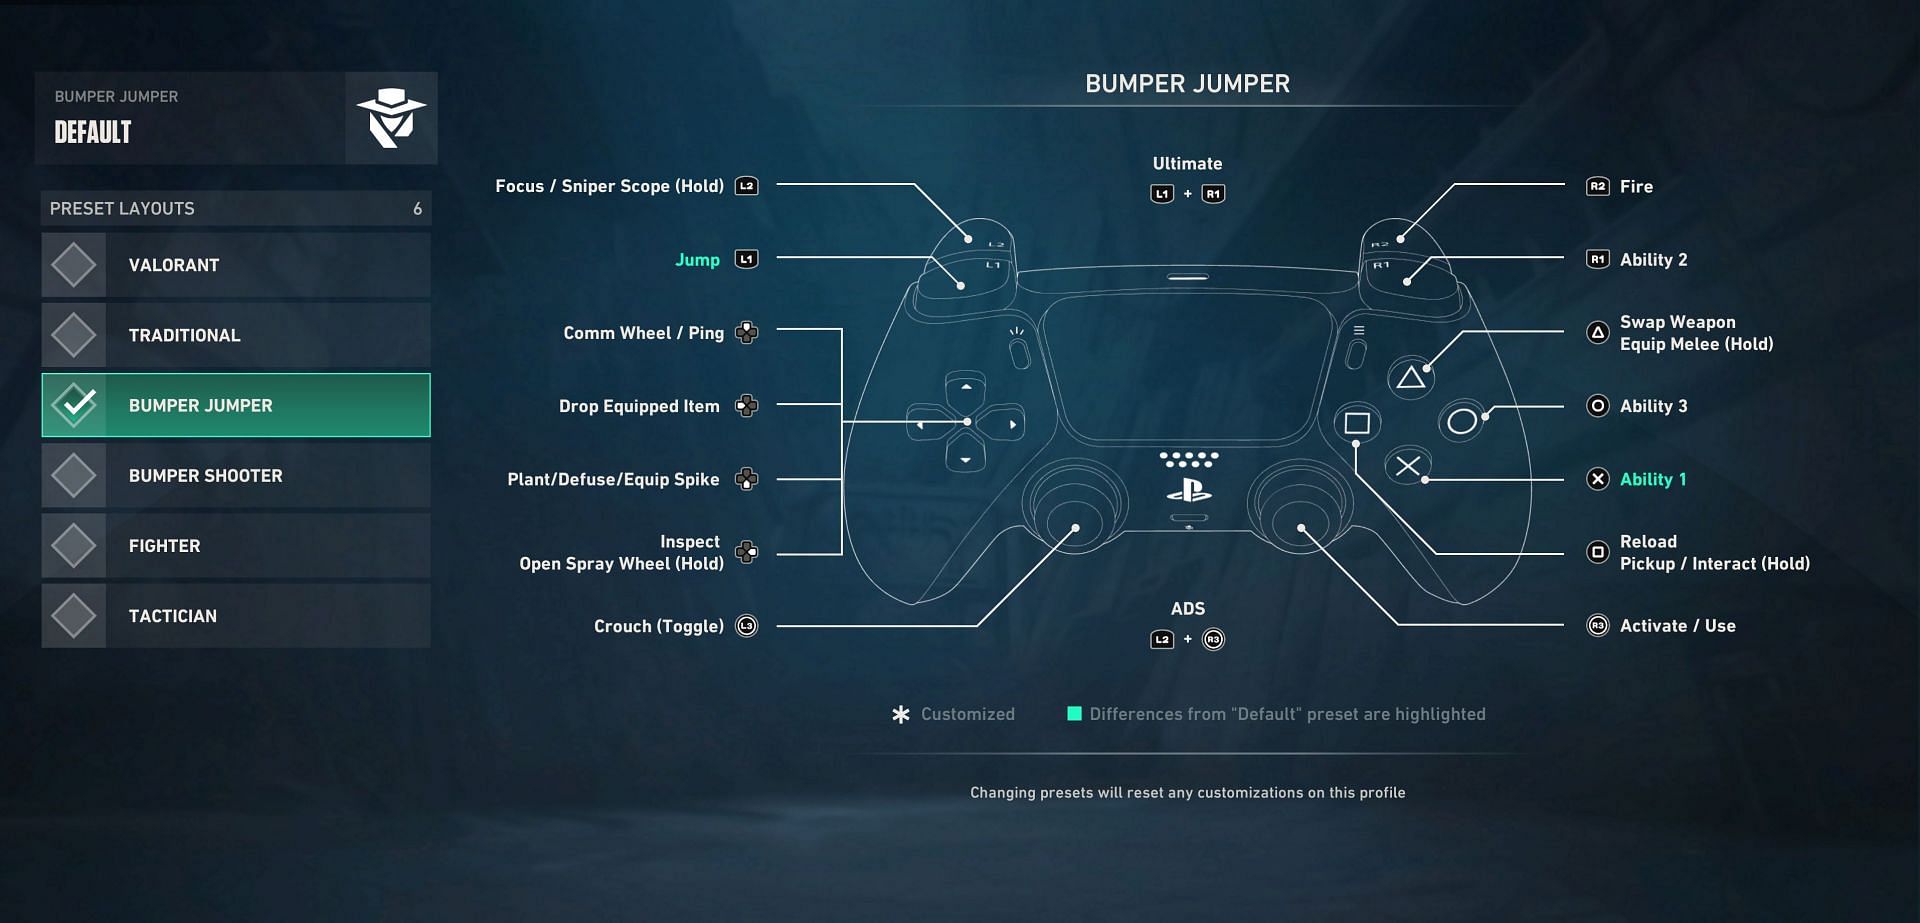 PS5 controllers - Bumper Jumper (Image via Riot Games)